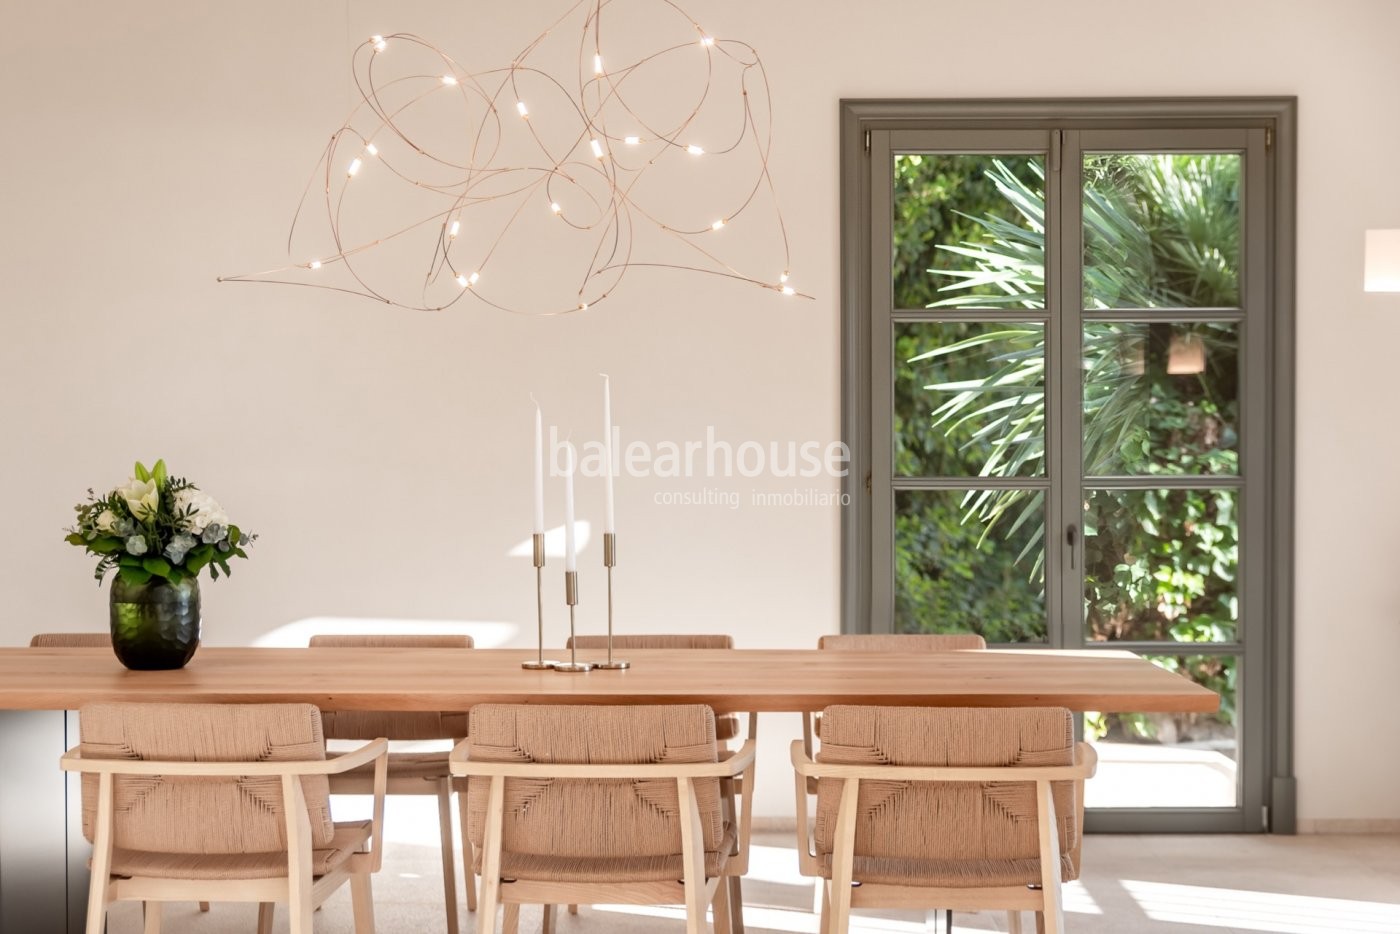 Licht, Design und Wohlbefinden mit schönem Meerblick in dieser großen Villa in Puerto de Andratx.